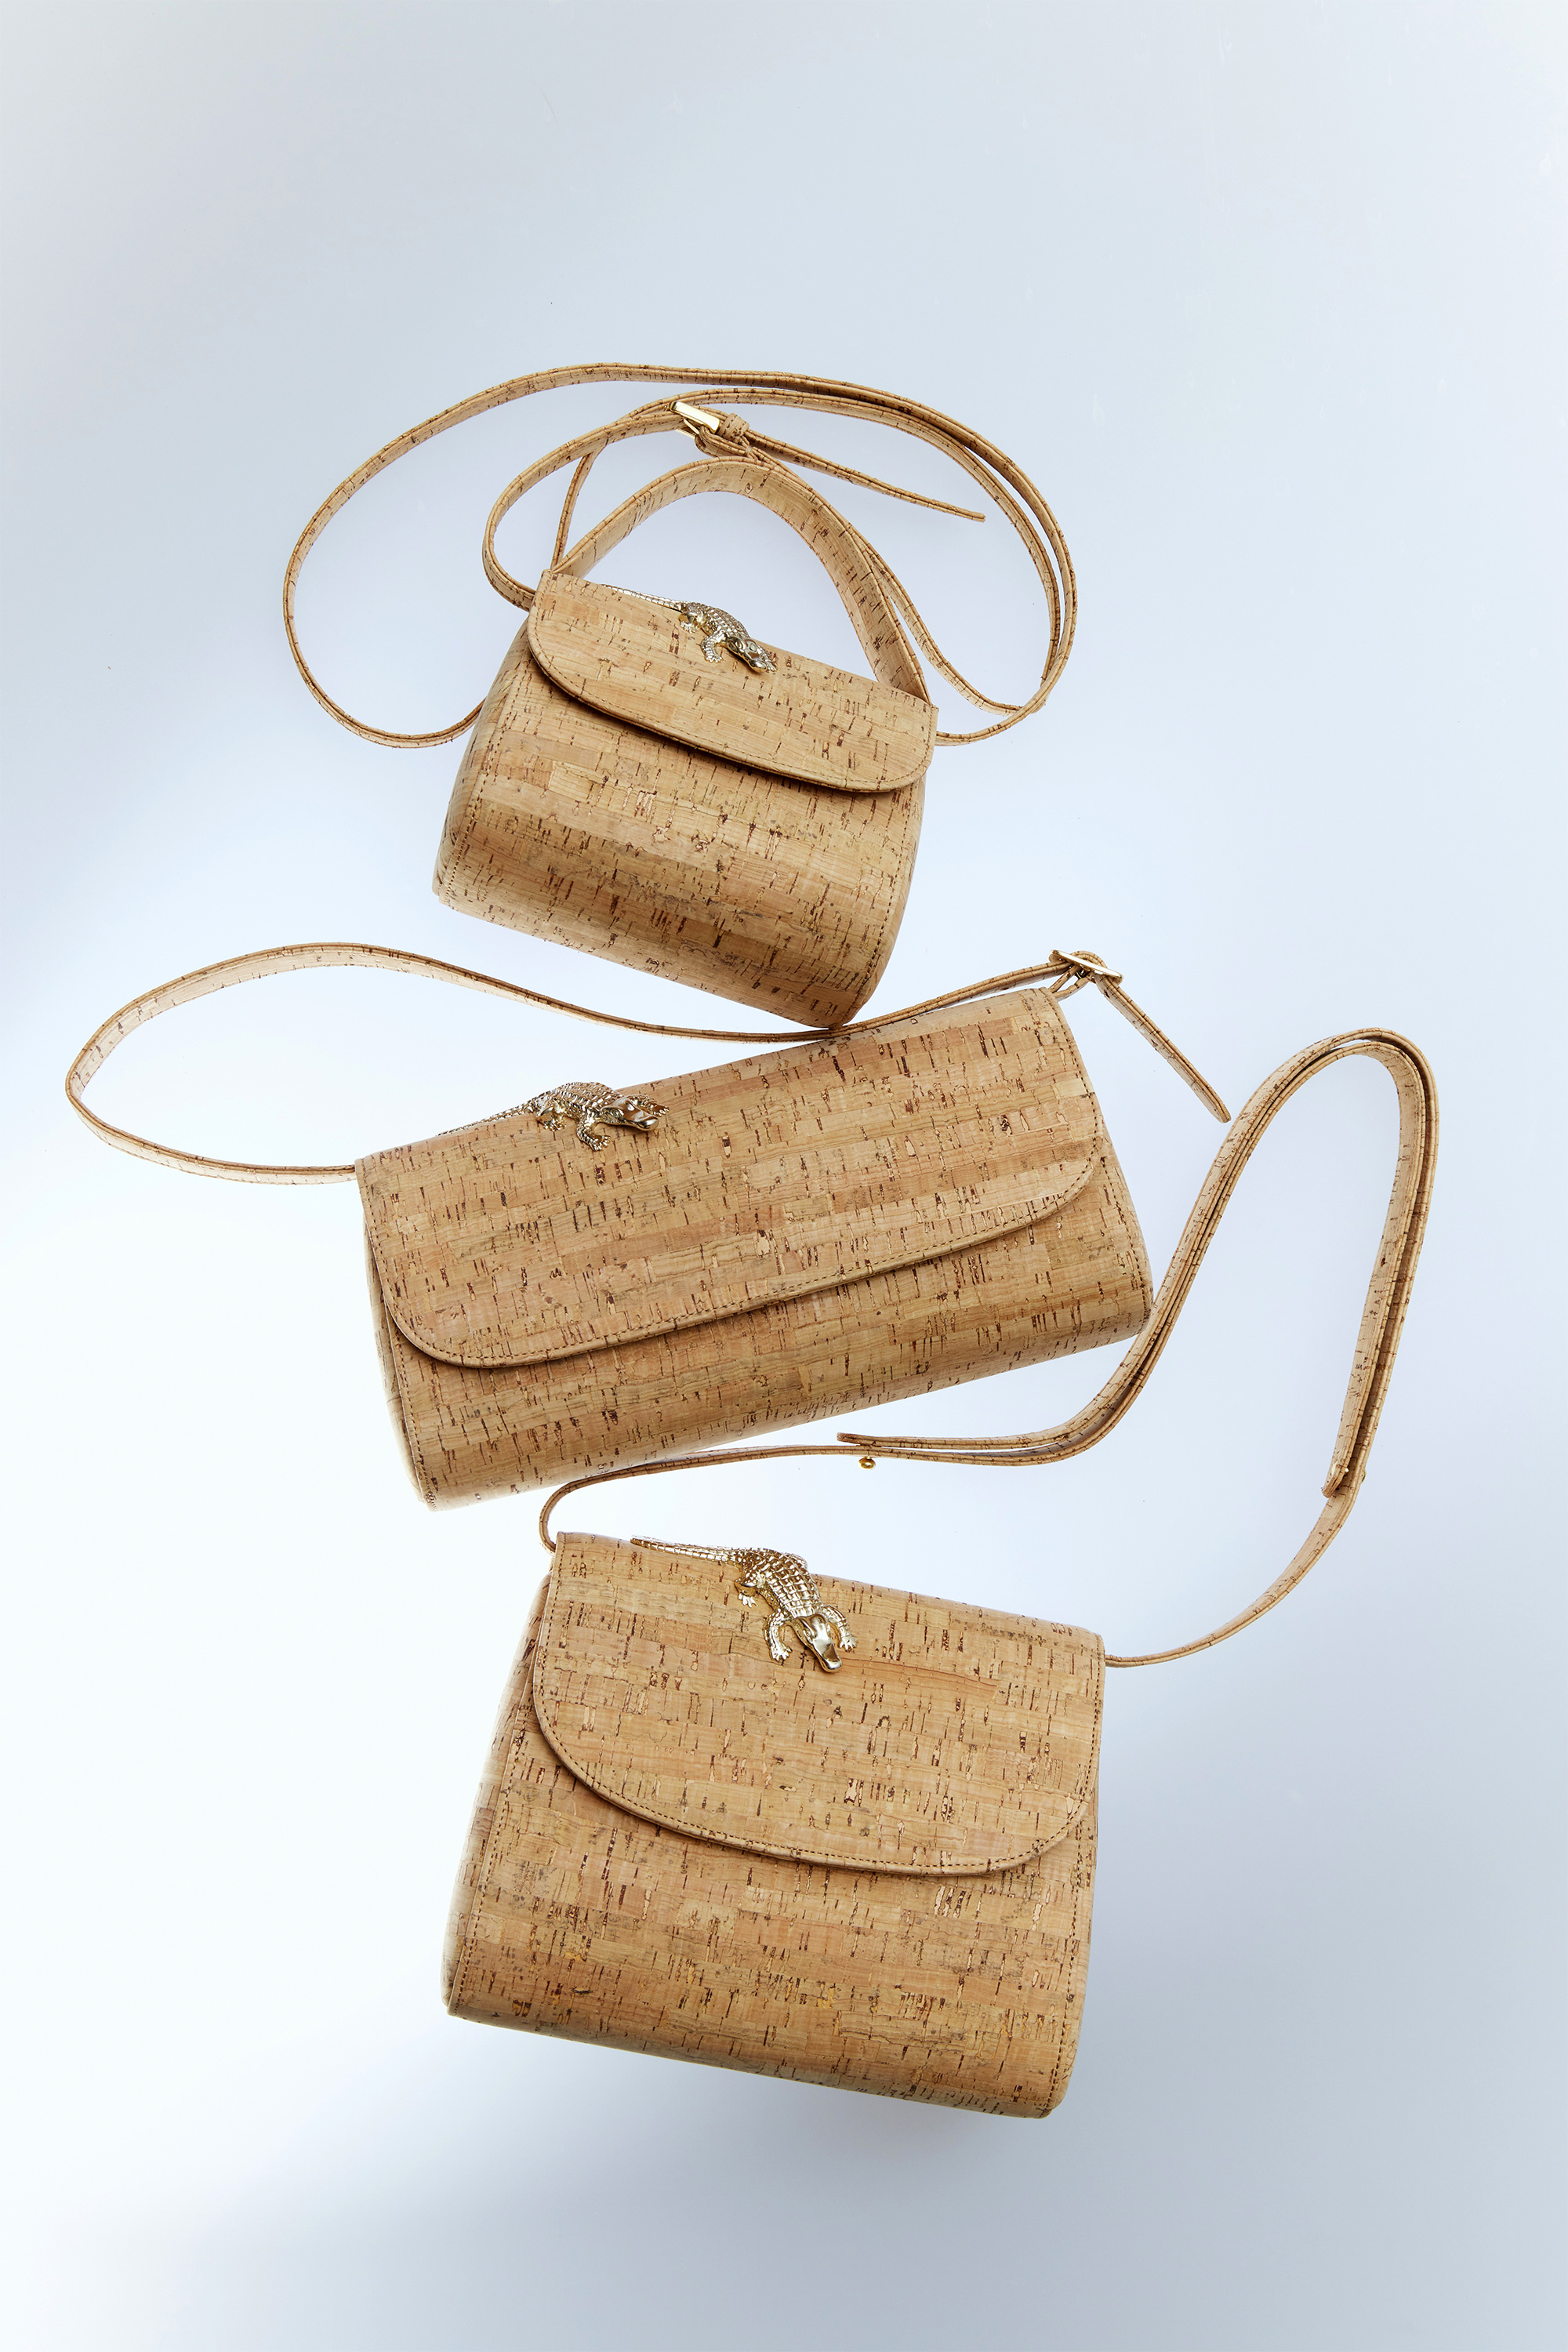 Golden Handmade Portuguese Cork Clutch Shoulder Bag Purse for